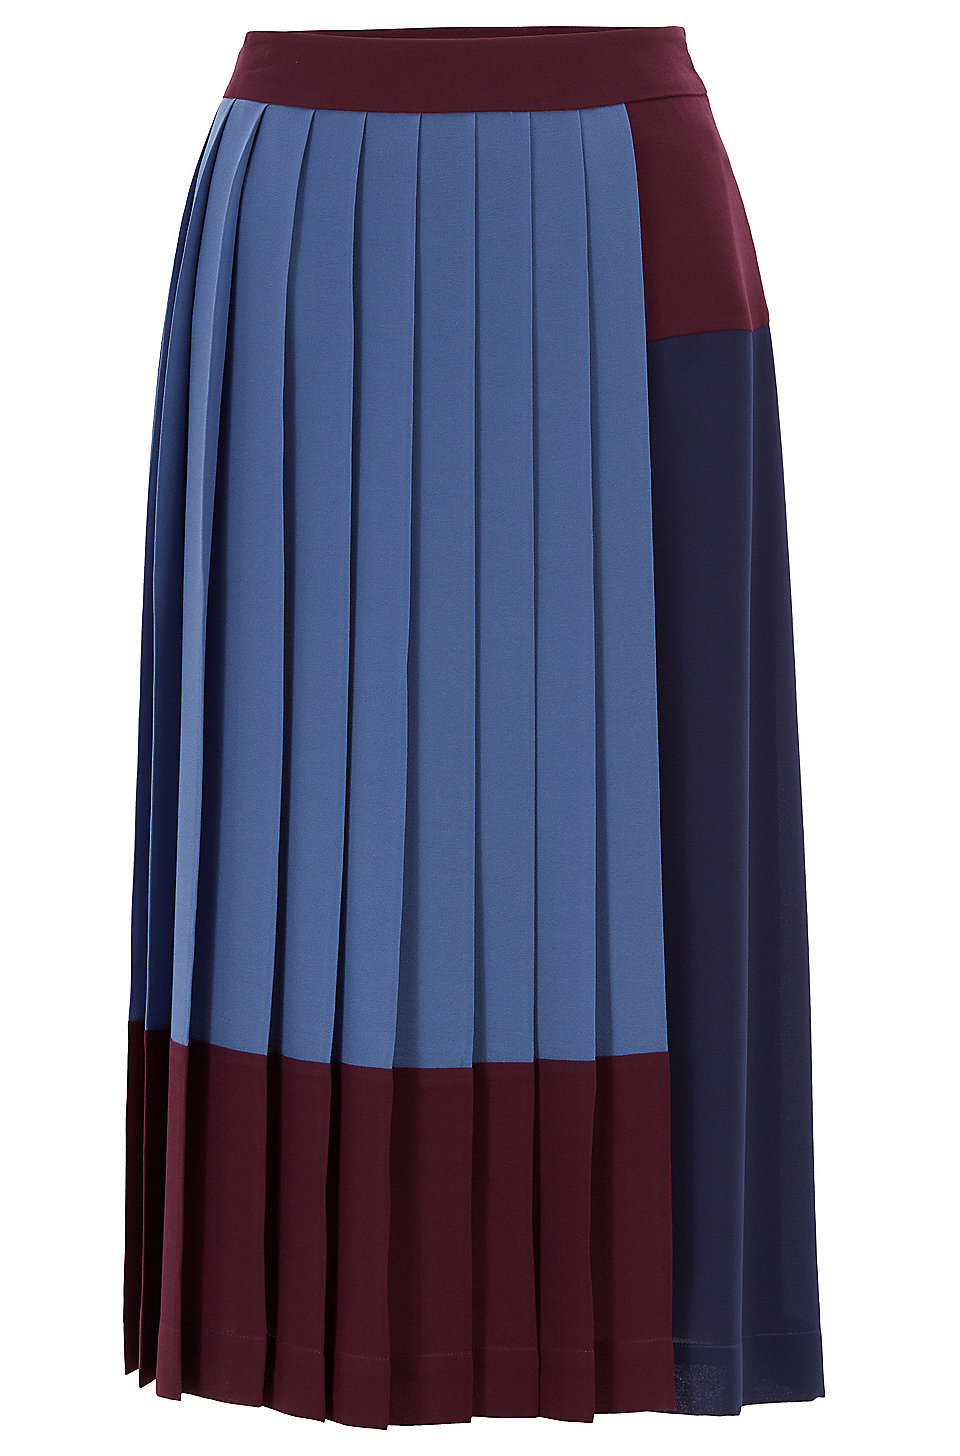 Hugo Boss Midesa Midi Skirt — The 